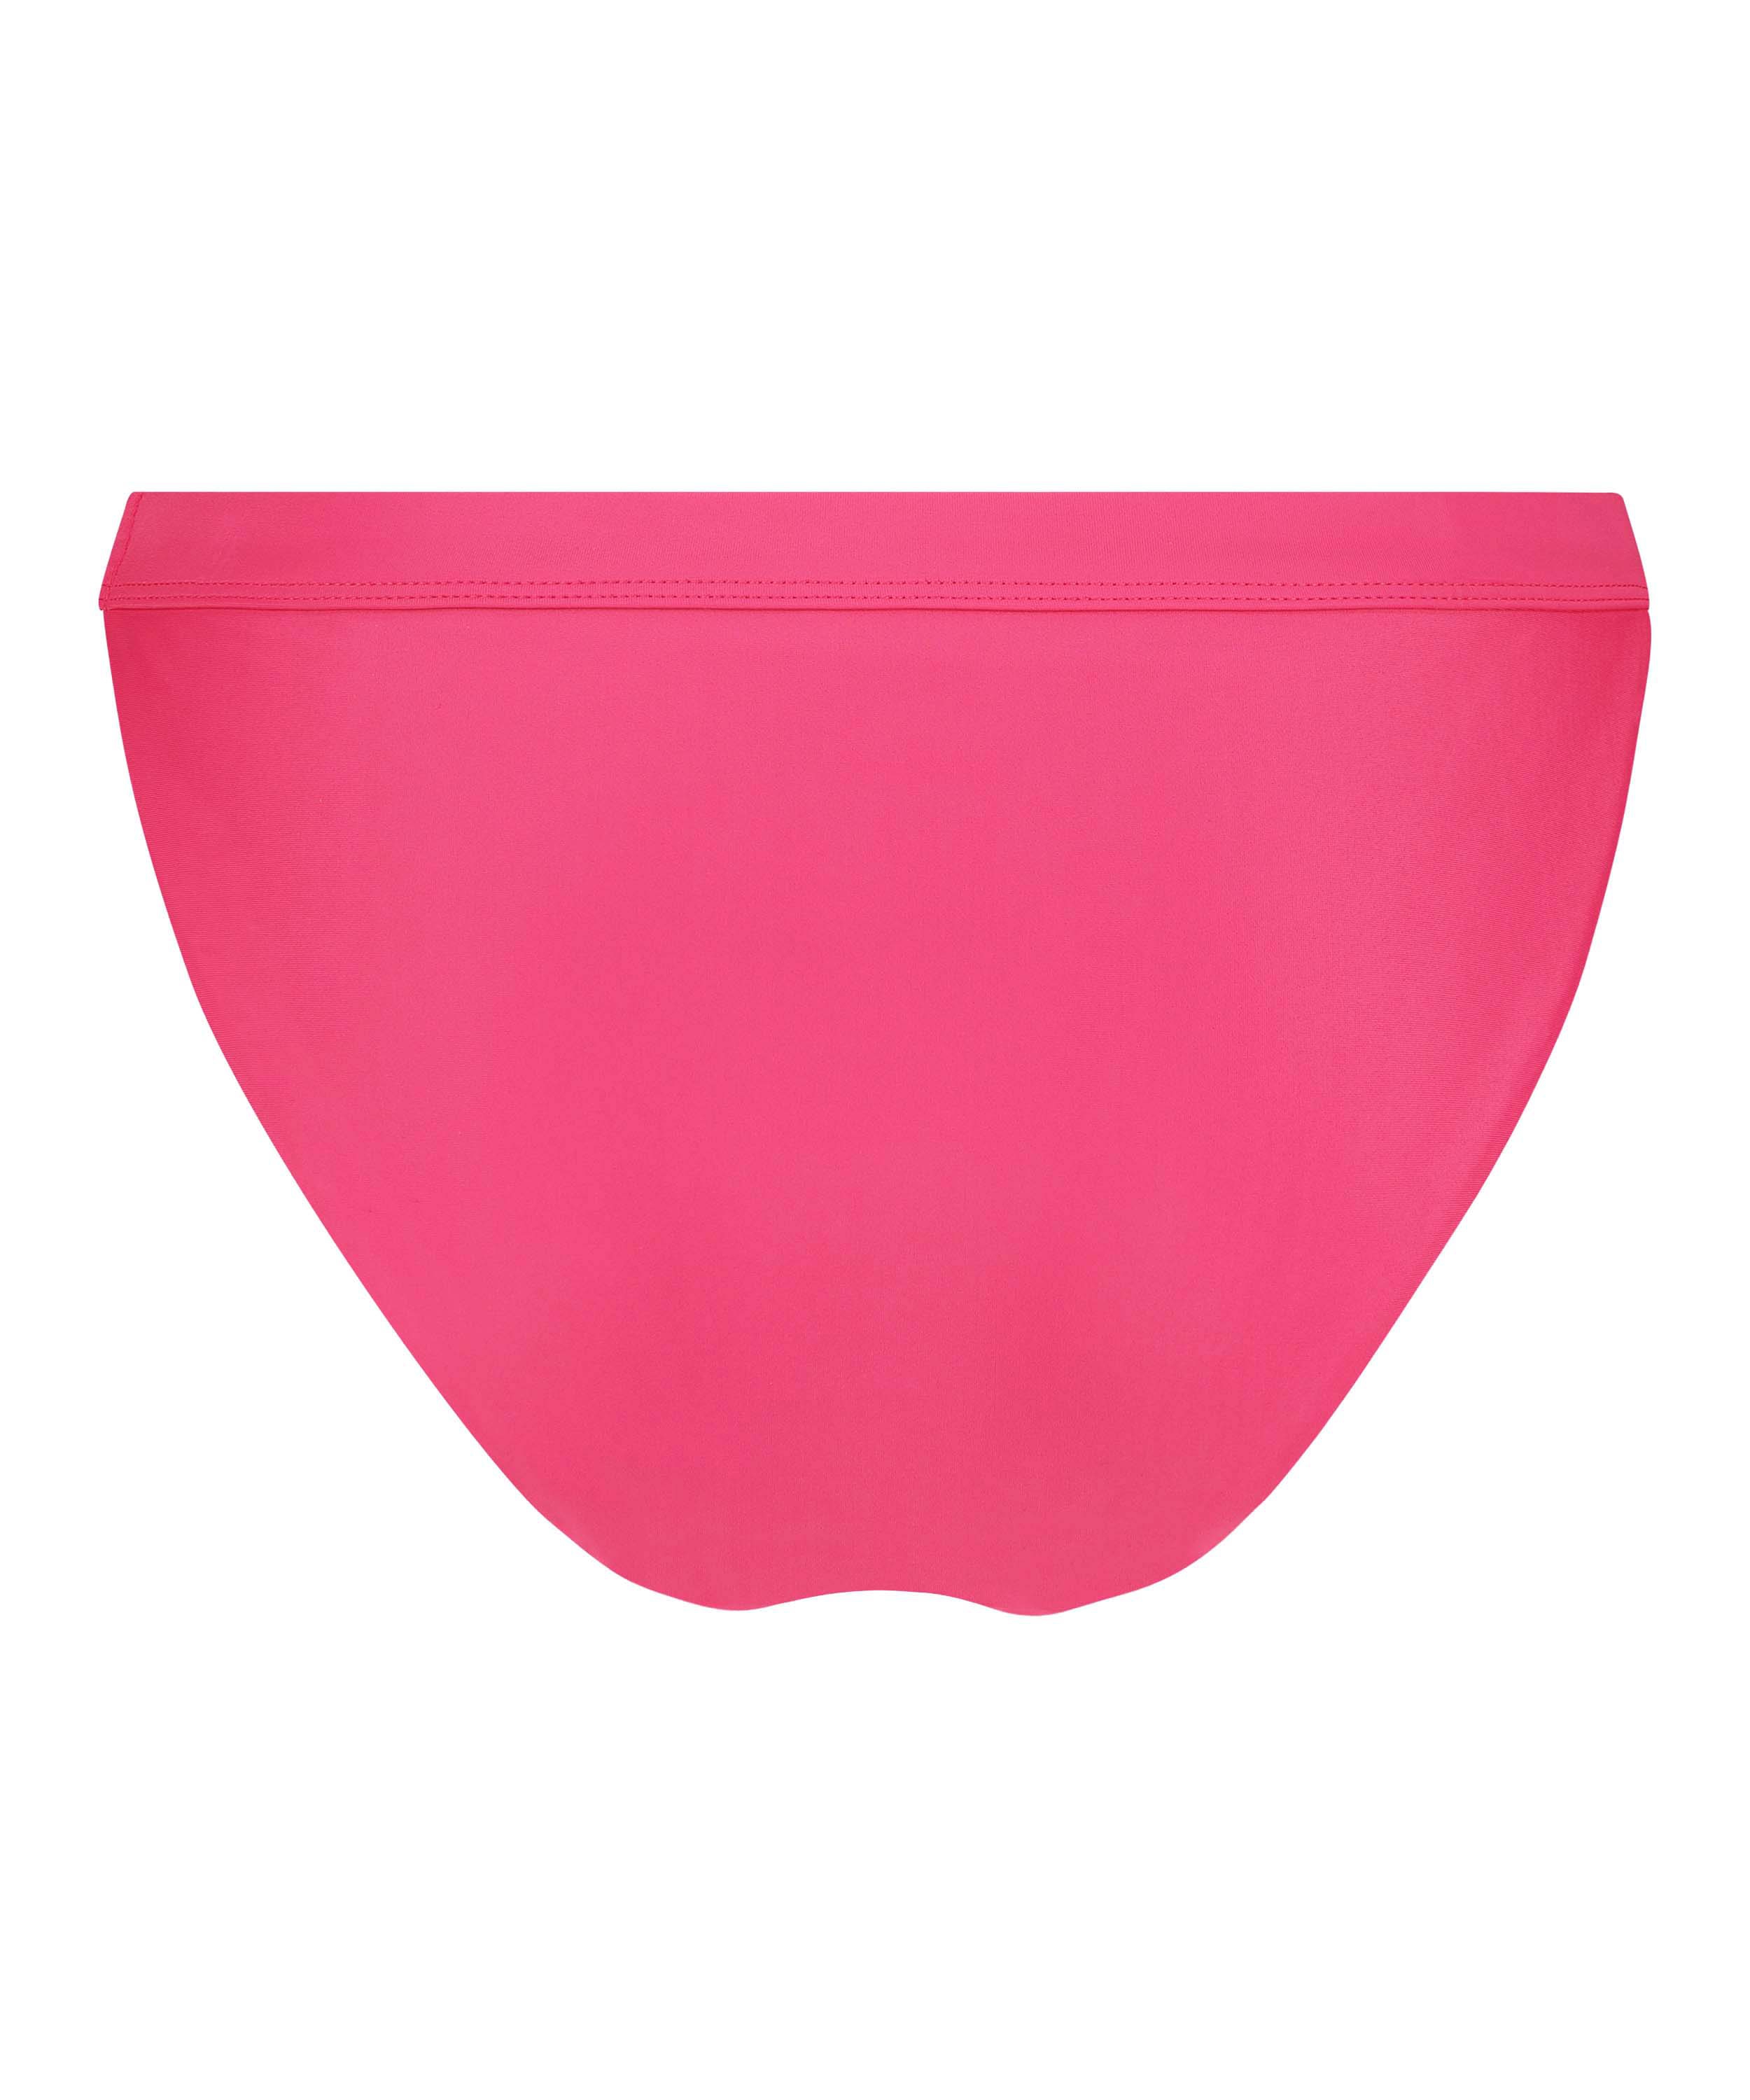 Ibiza Bikini Bottoms, Pink, main